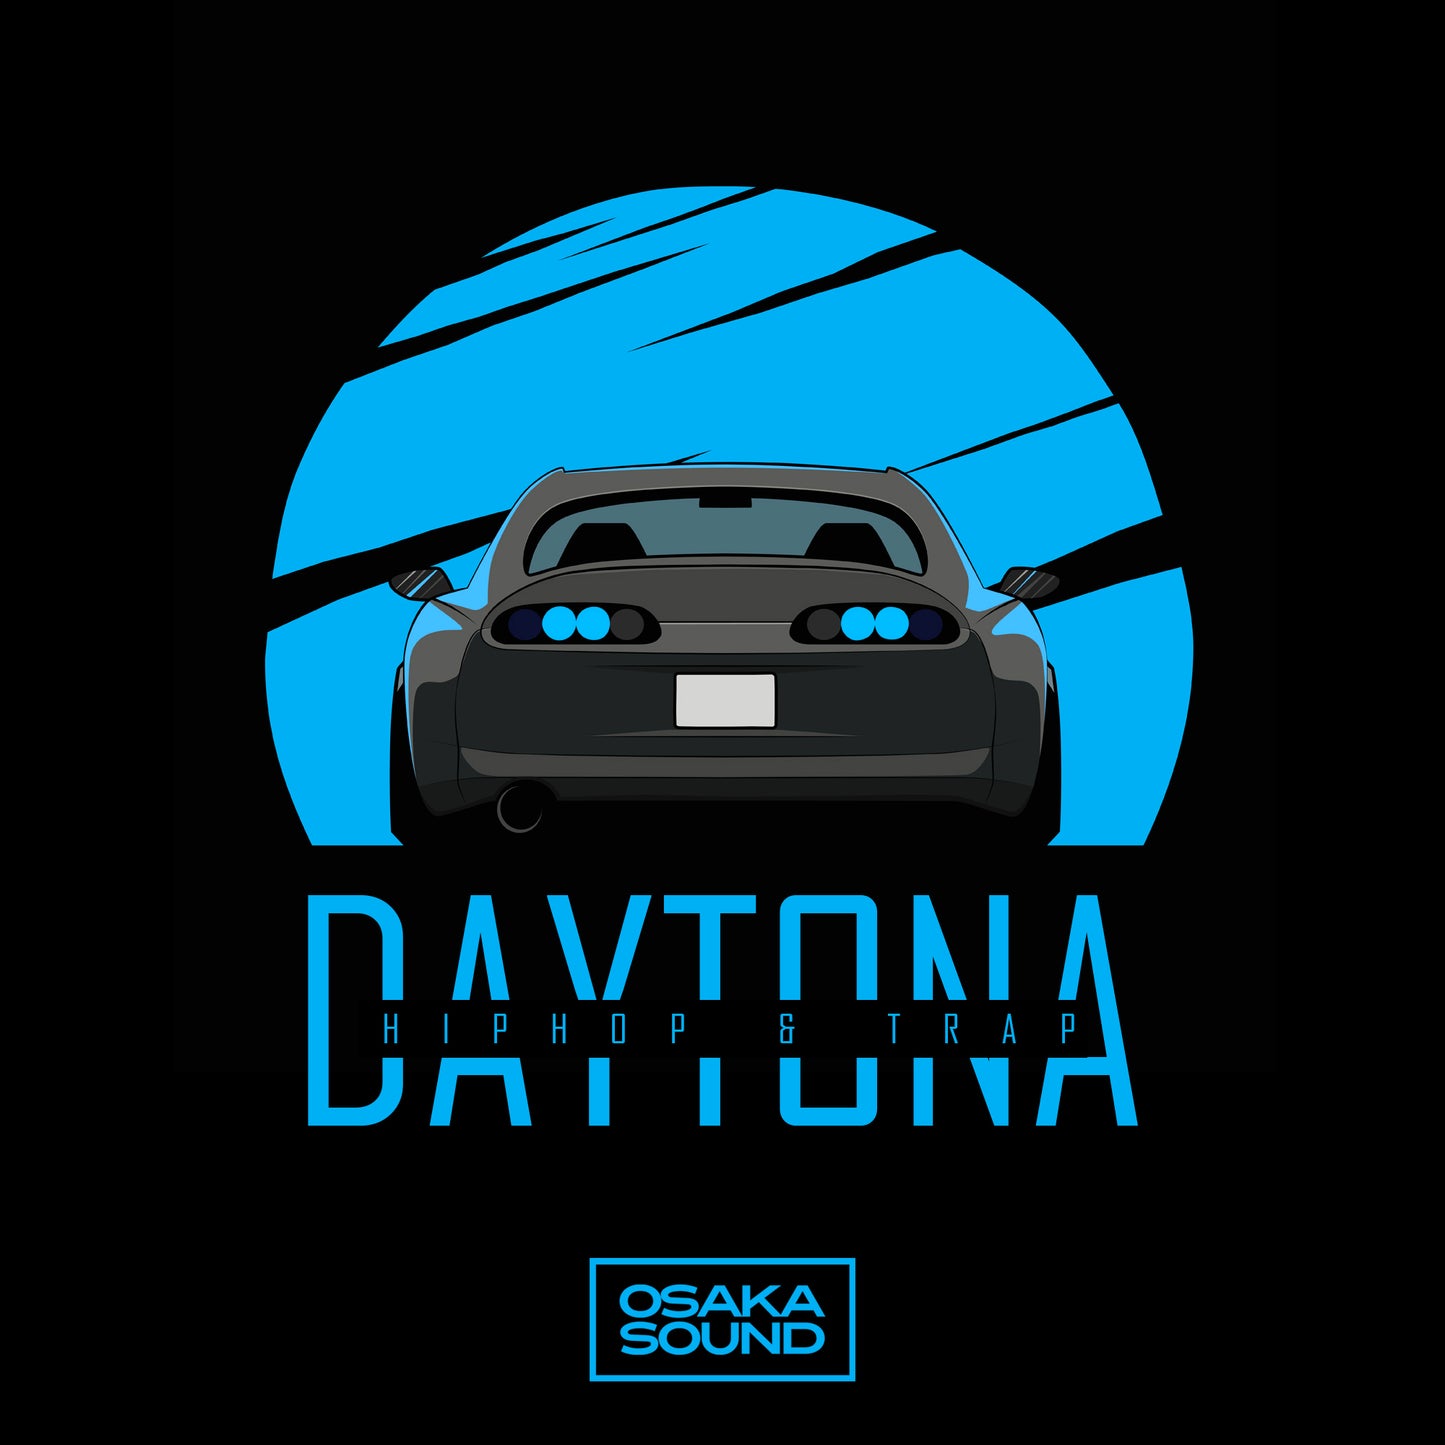 Daytona 2: Hip Hop & Trap